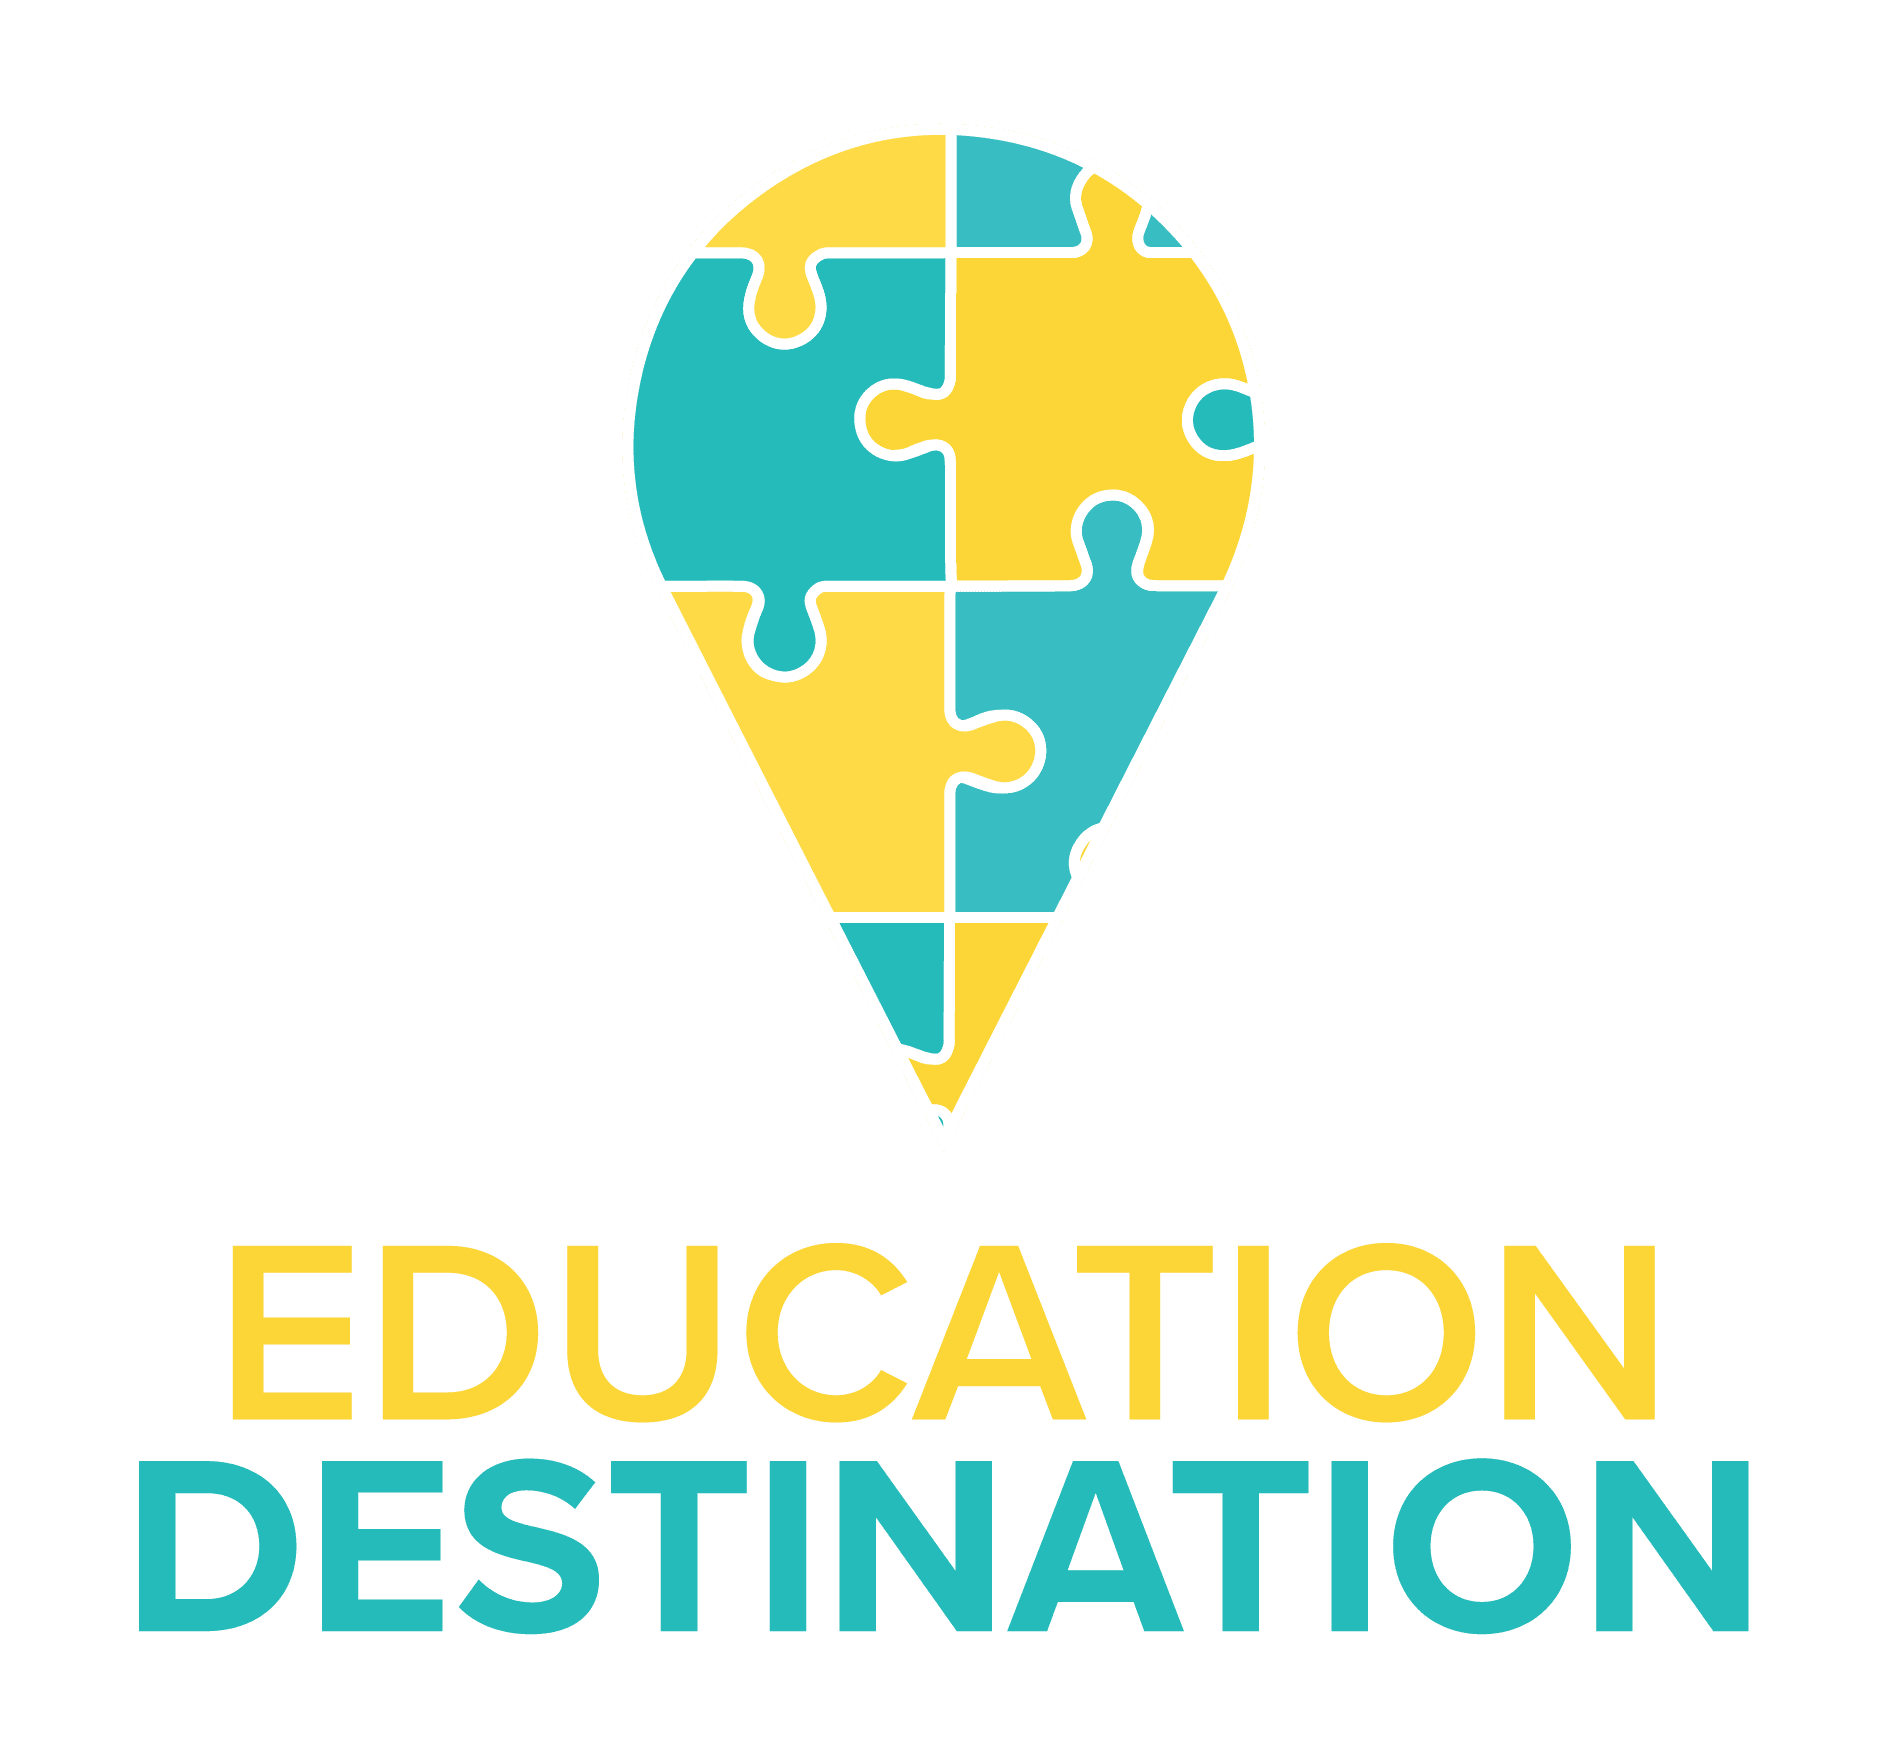 Education Destination